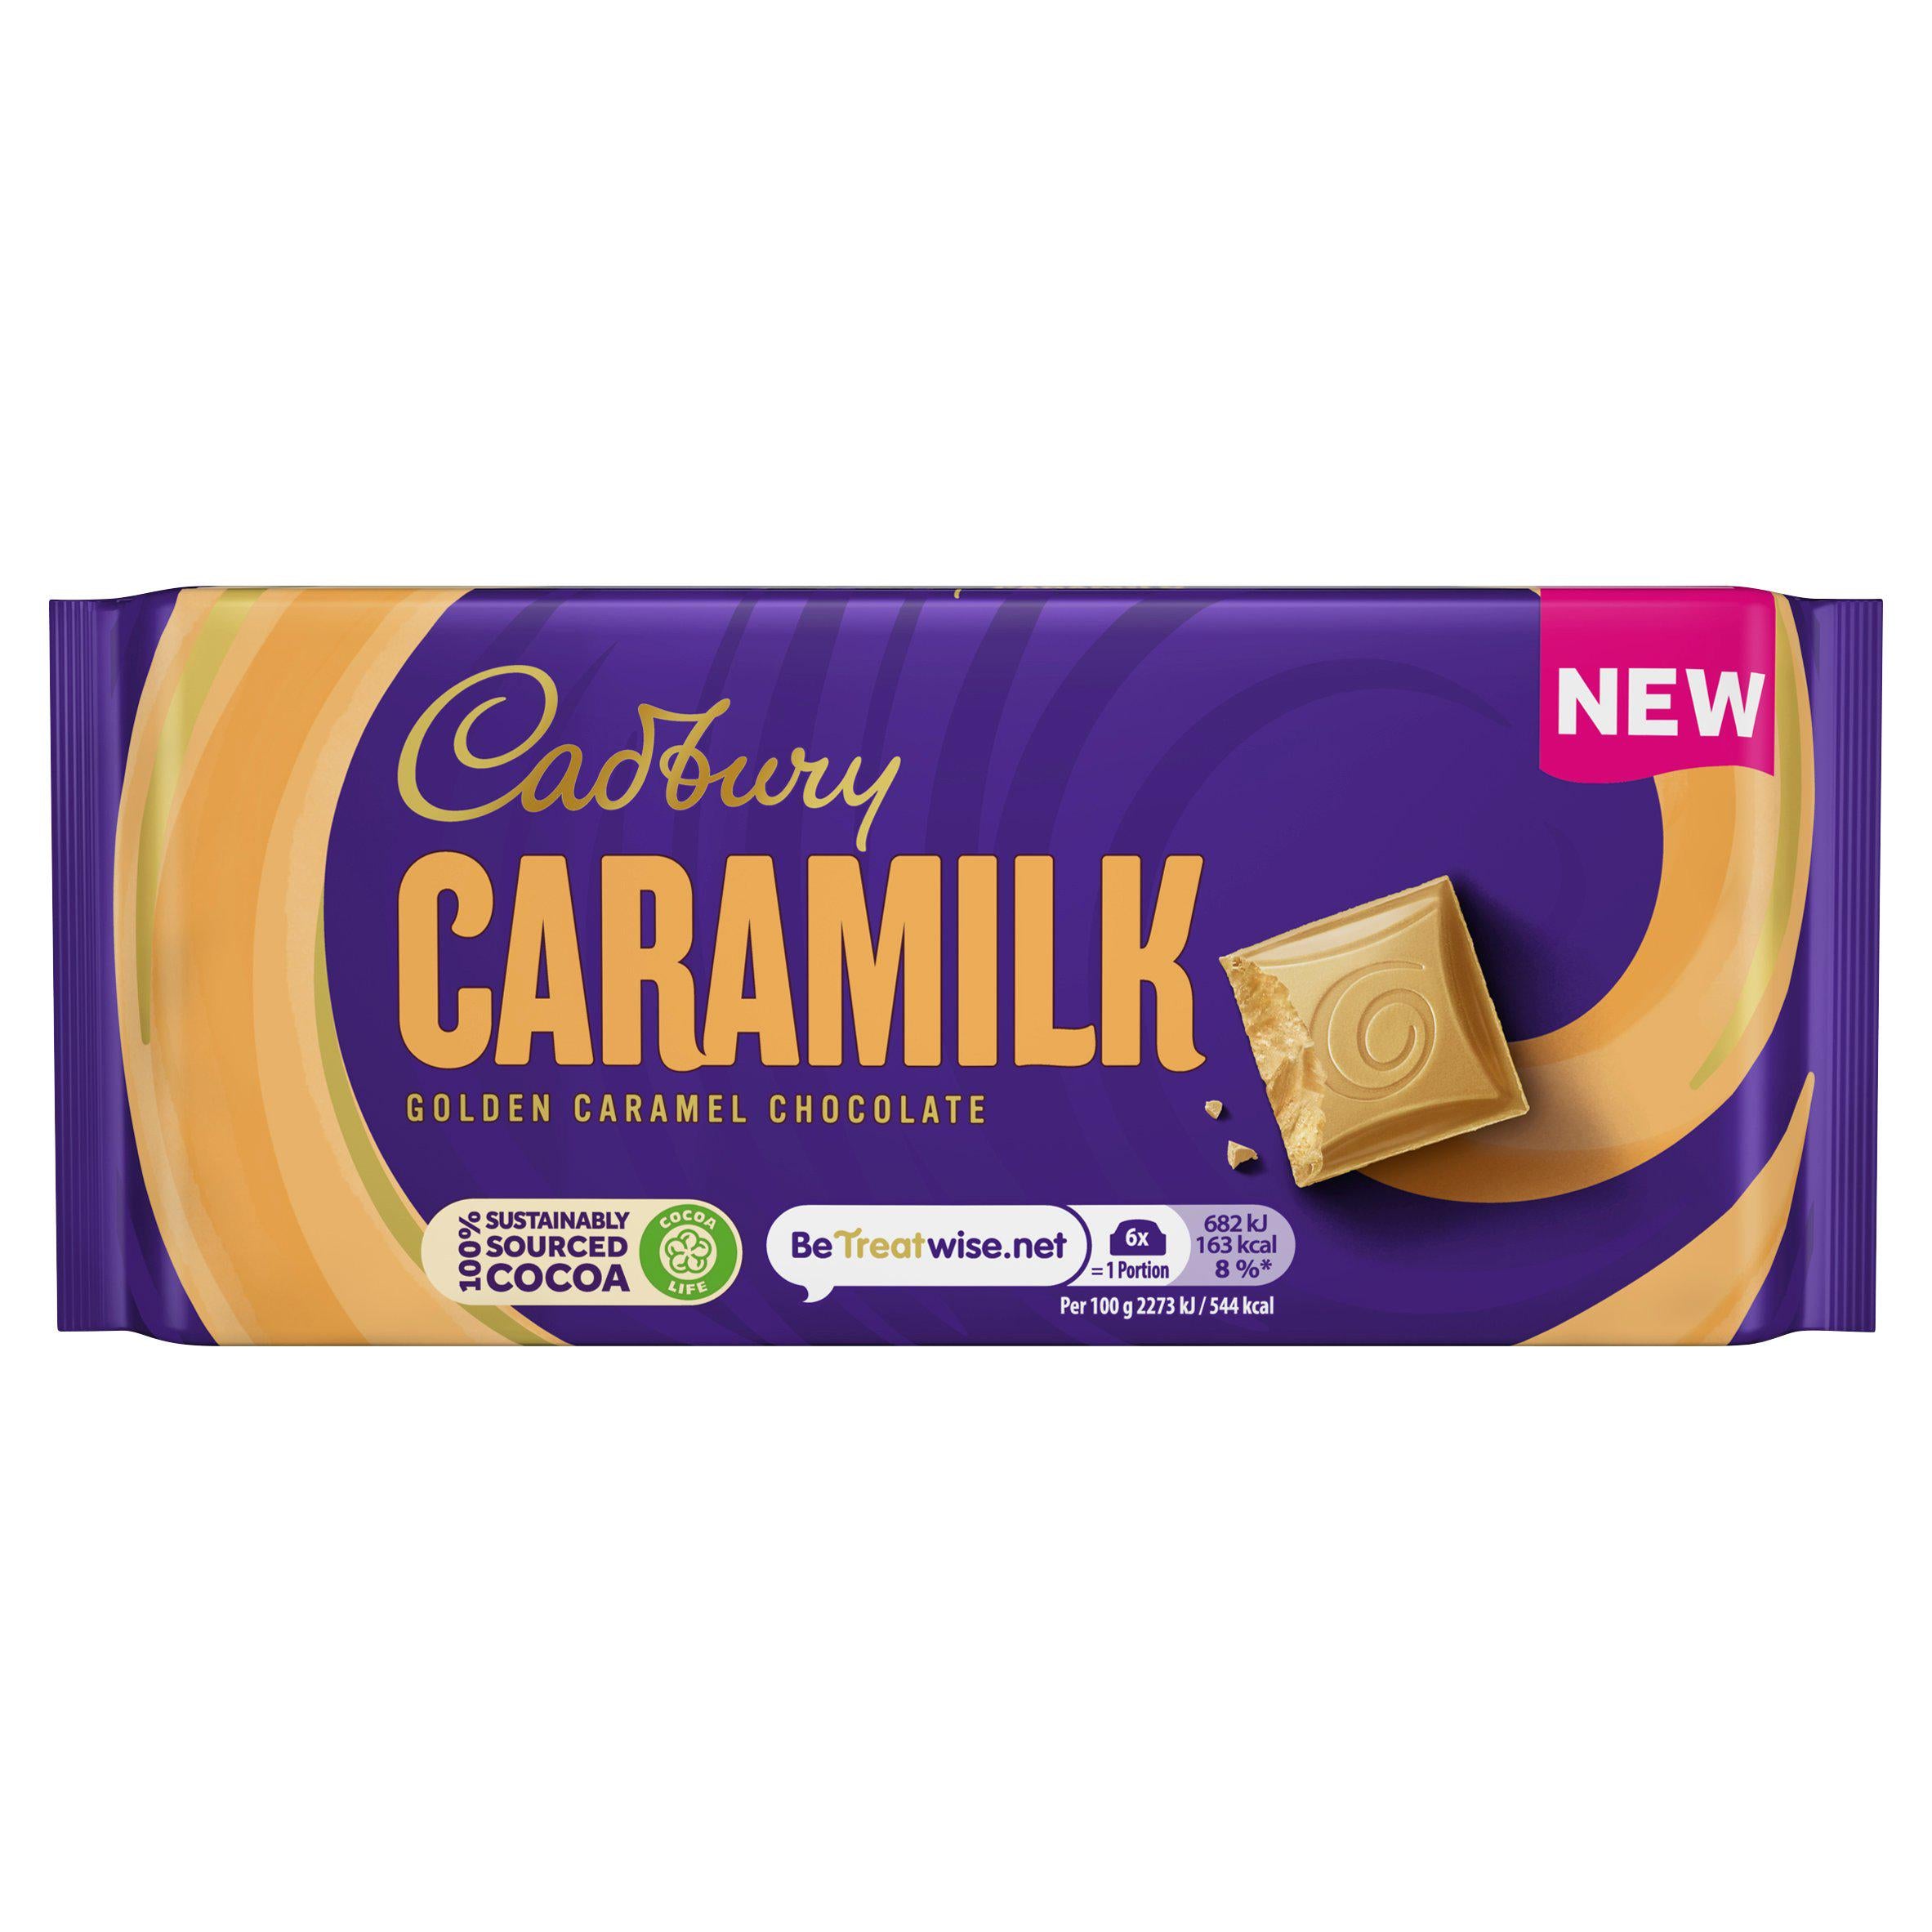 Cadbury Caramilk Golden Caramel Chocolate Bar 90g - UK Edition